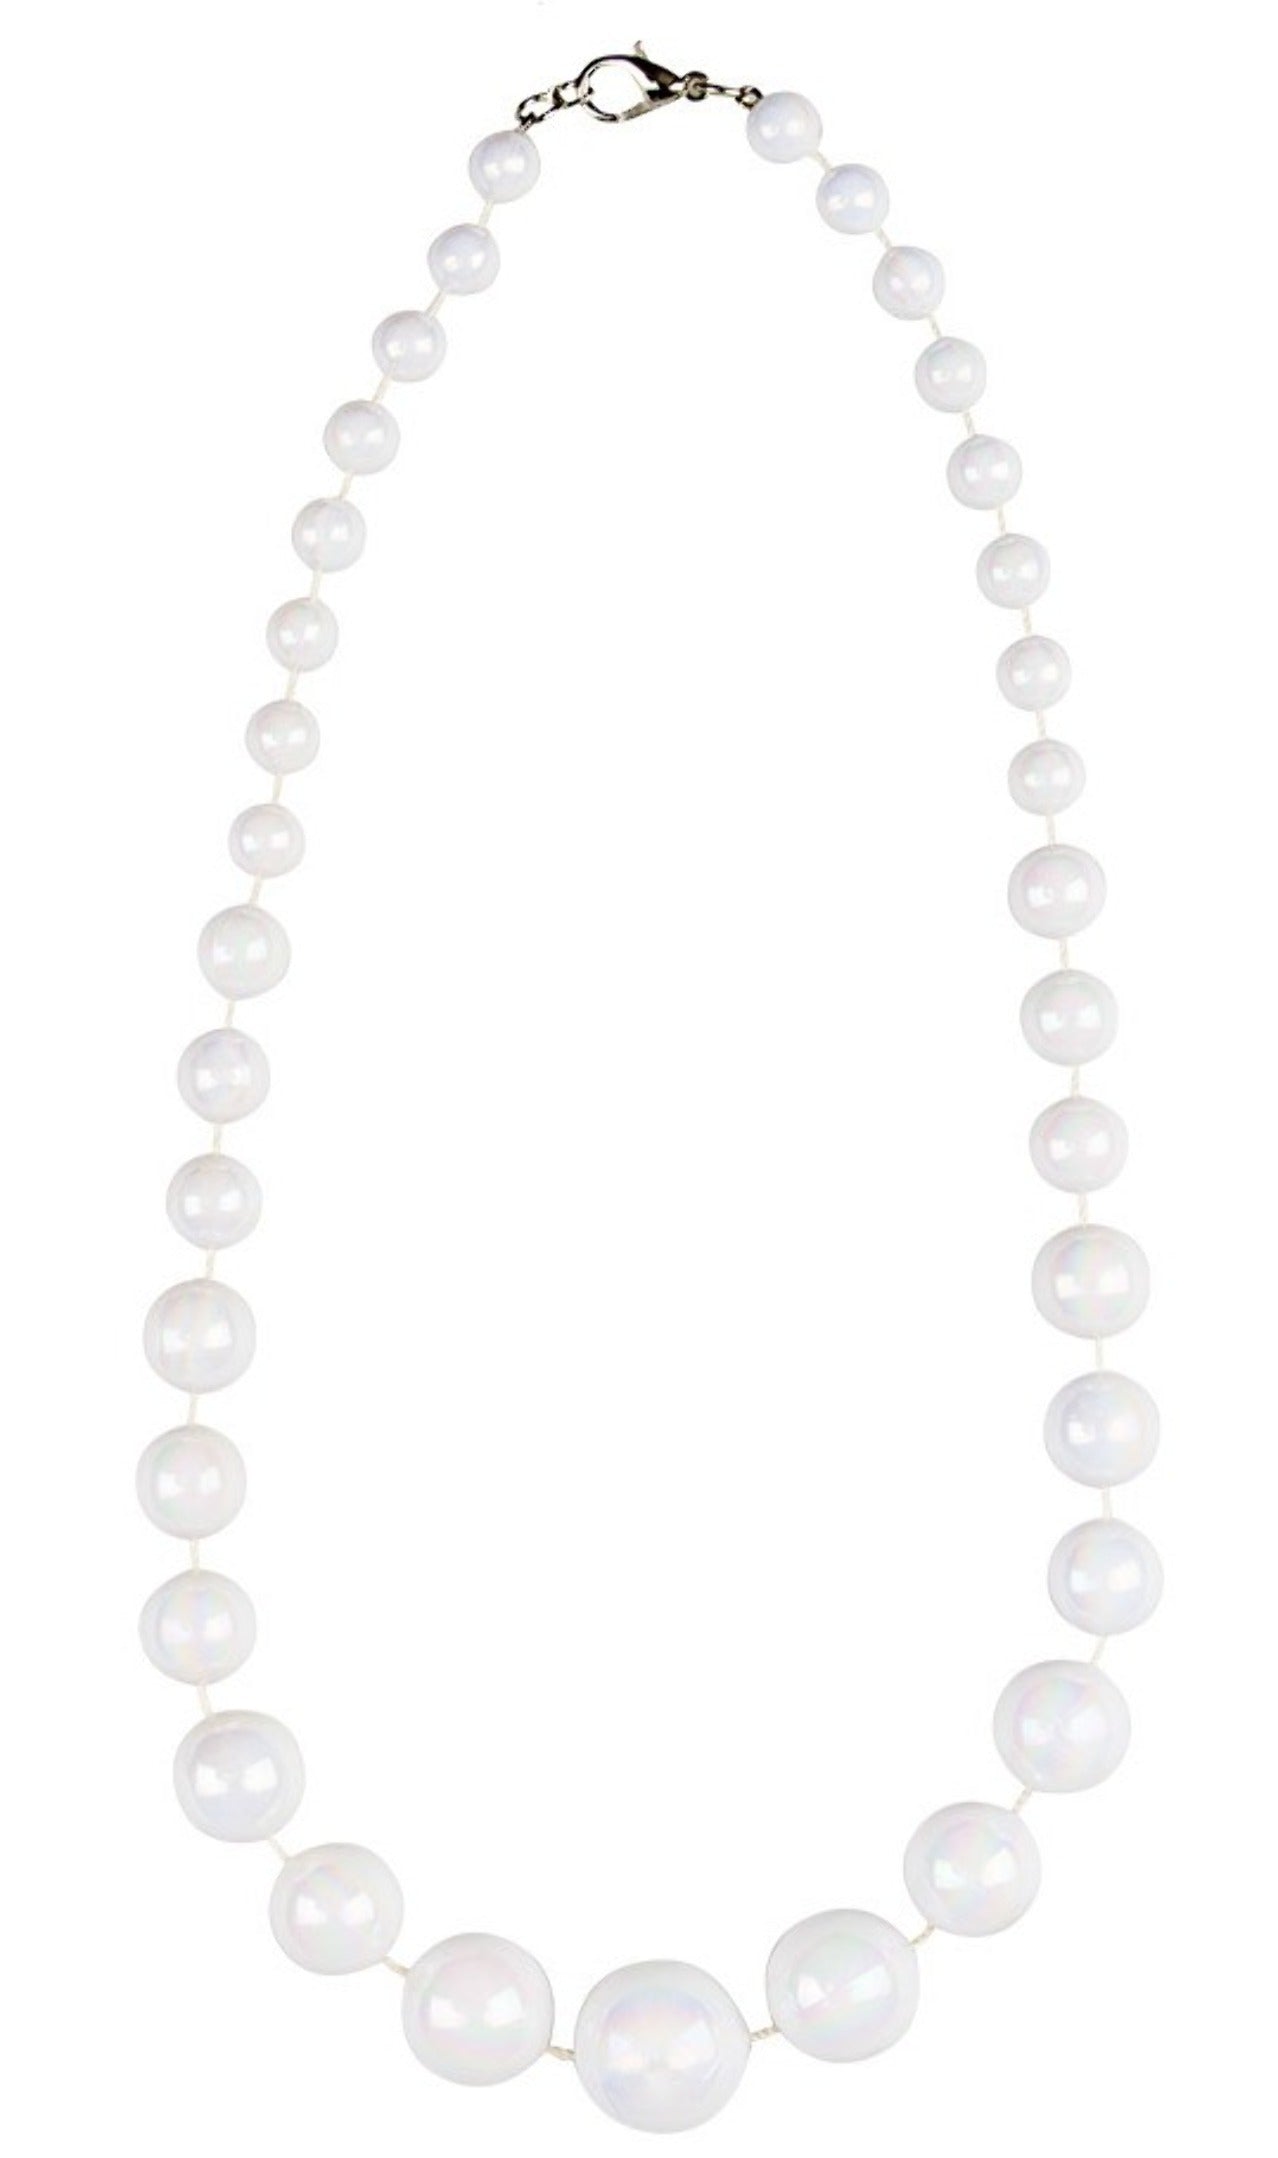 Halskette mit weißen Perlen